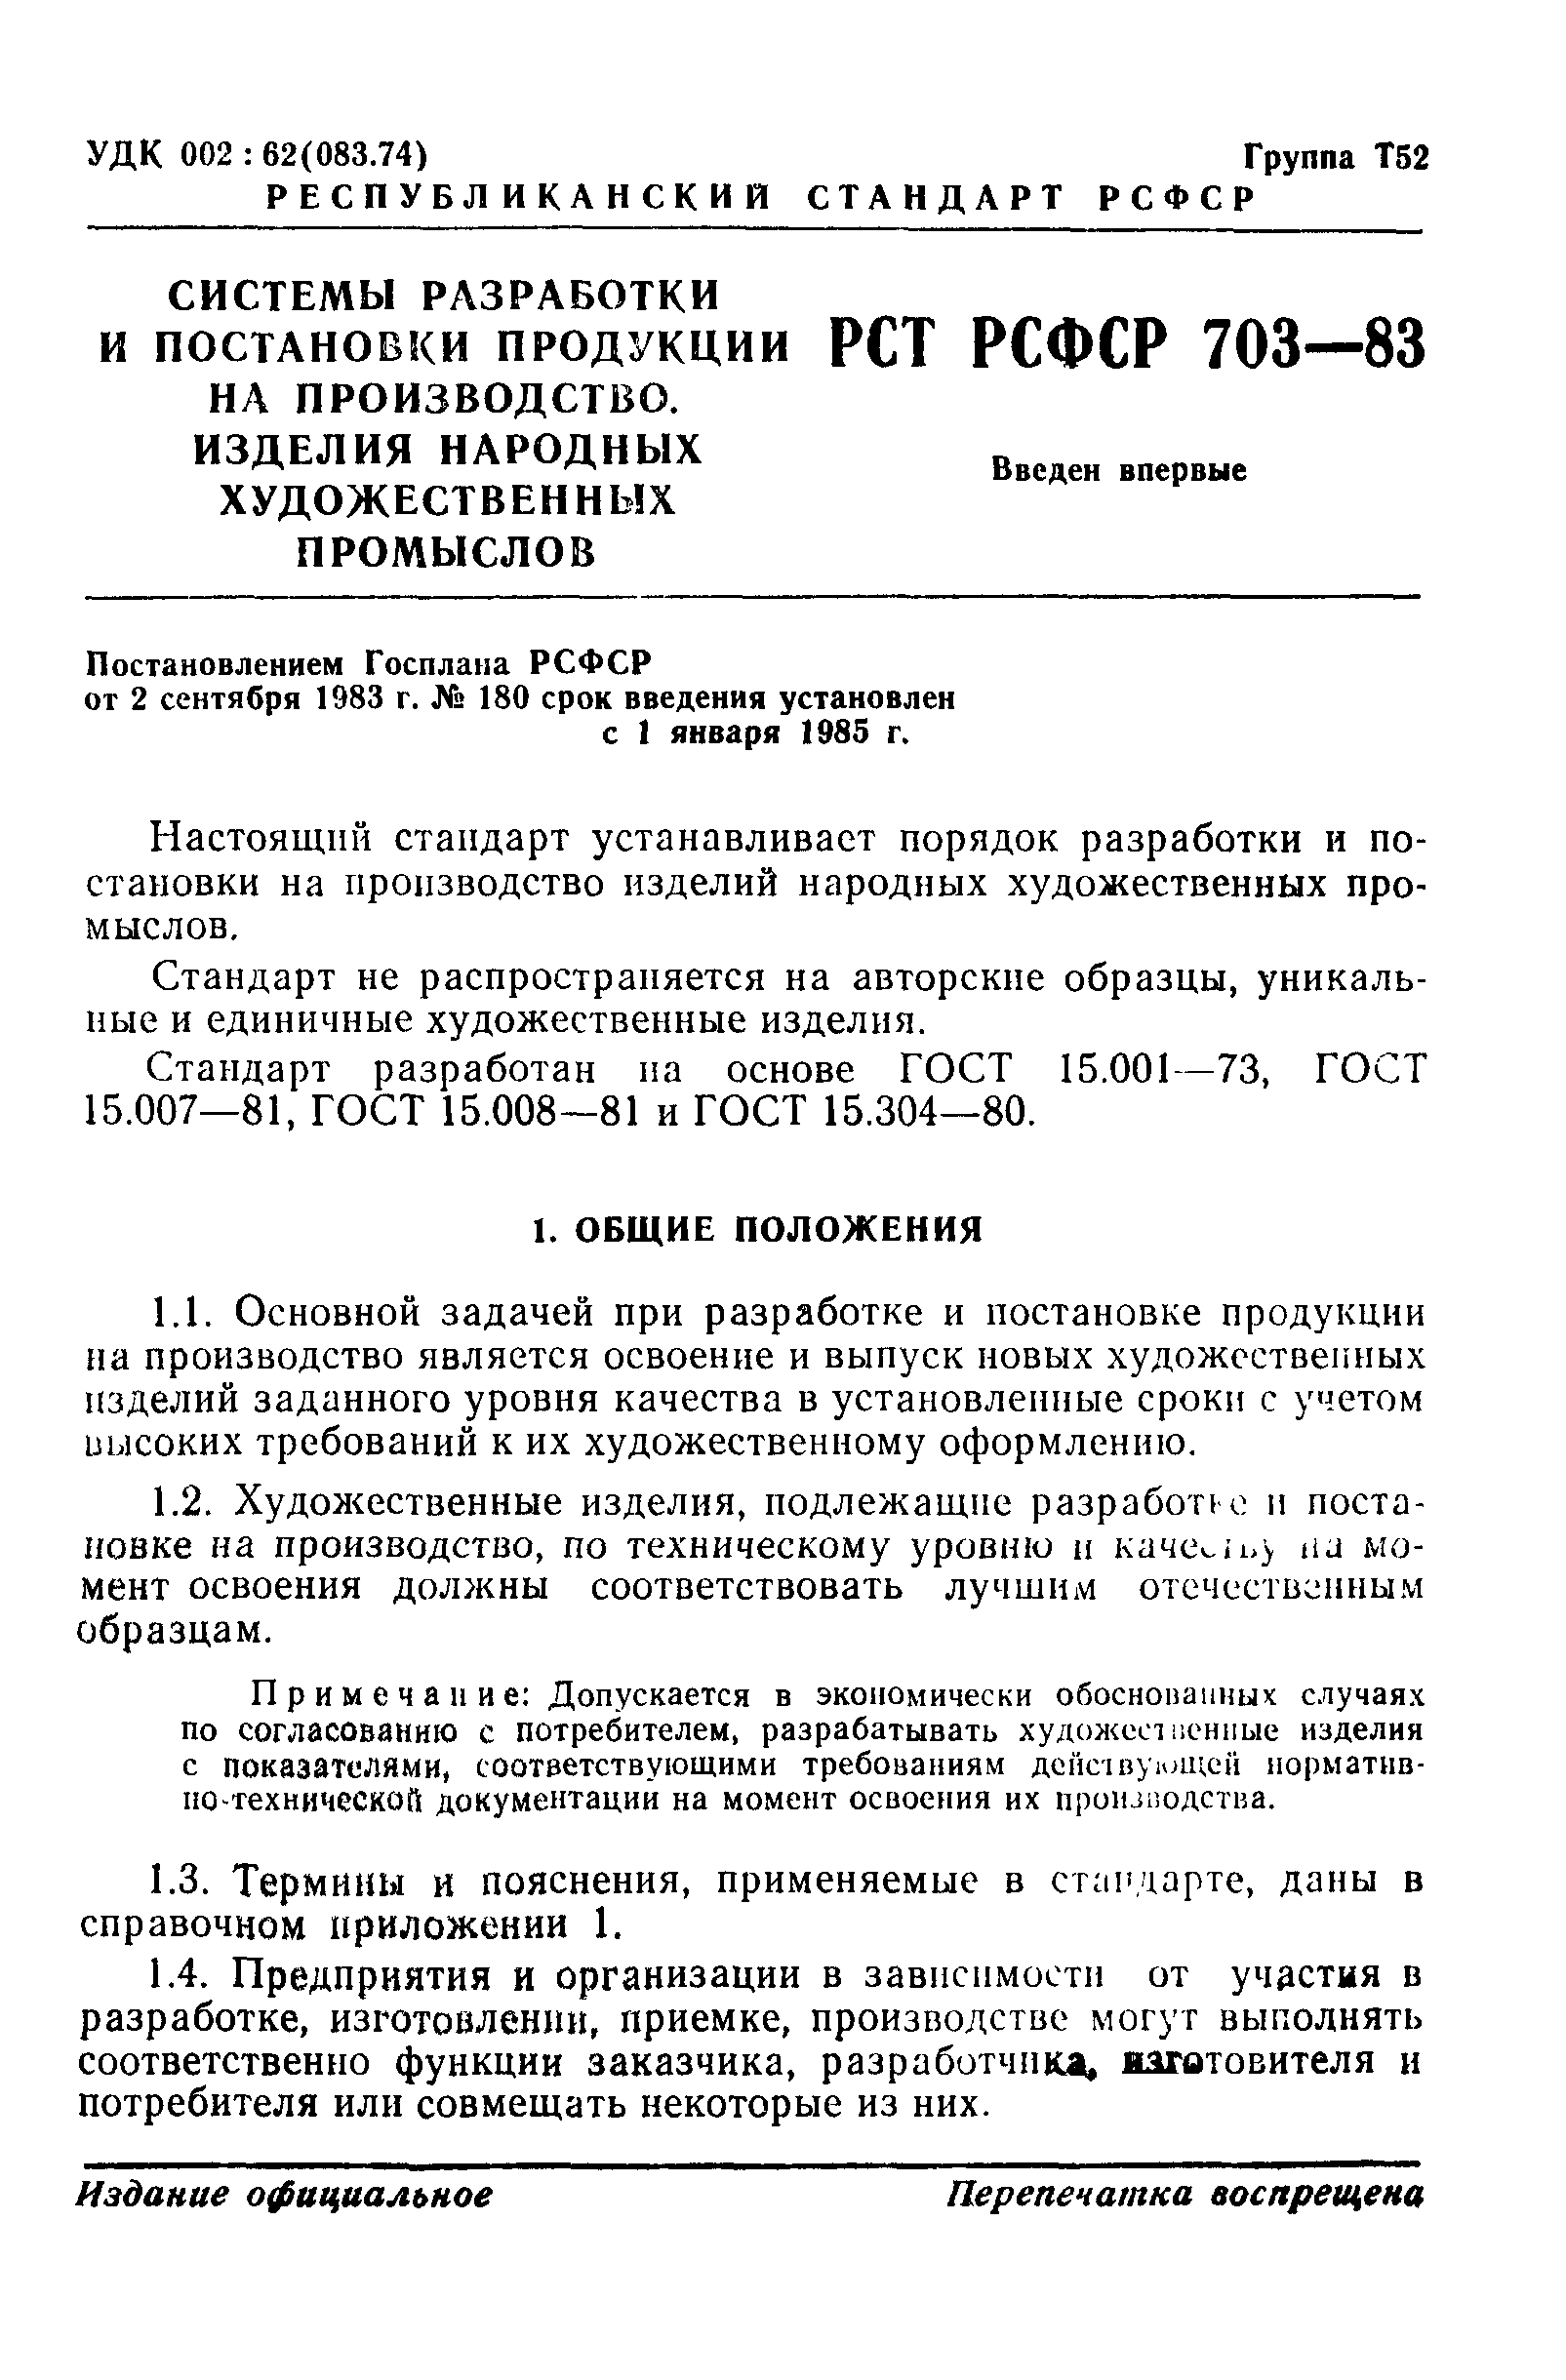 РСТ РСФСР 703-83